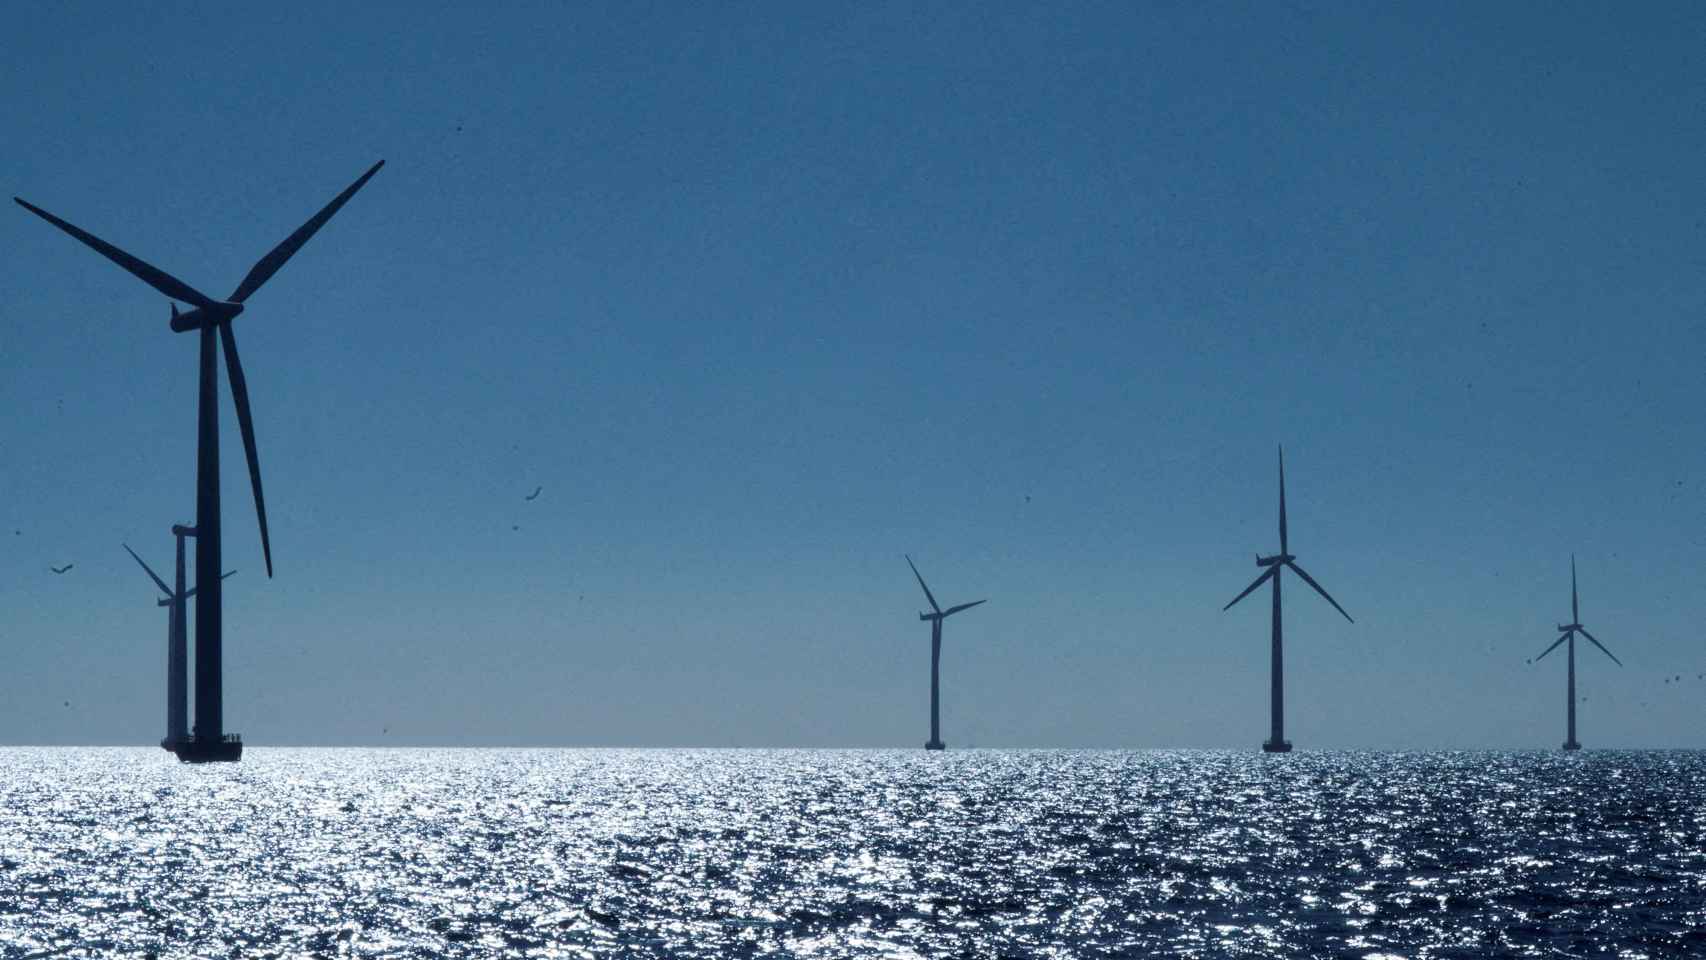 Molino de viento energía renovable eólica on shore – Canal del